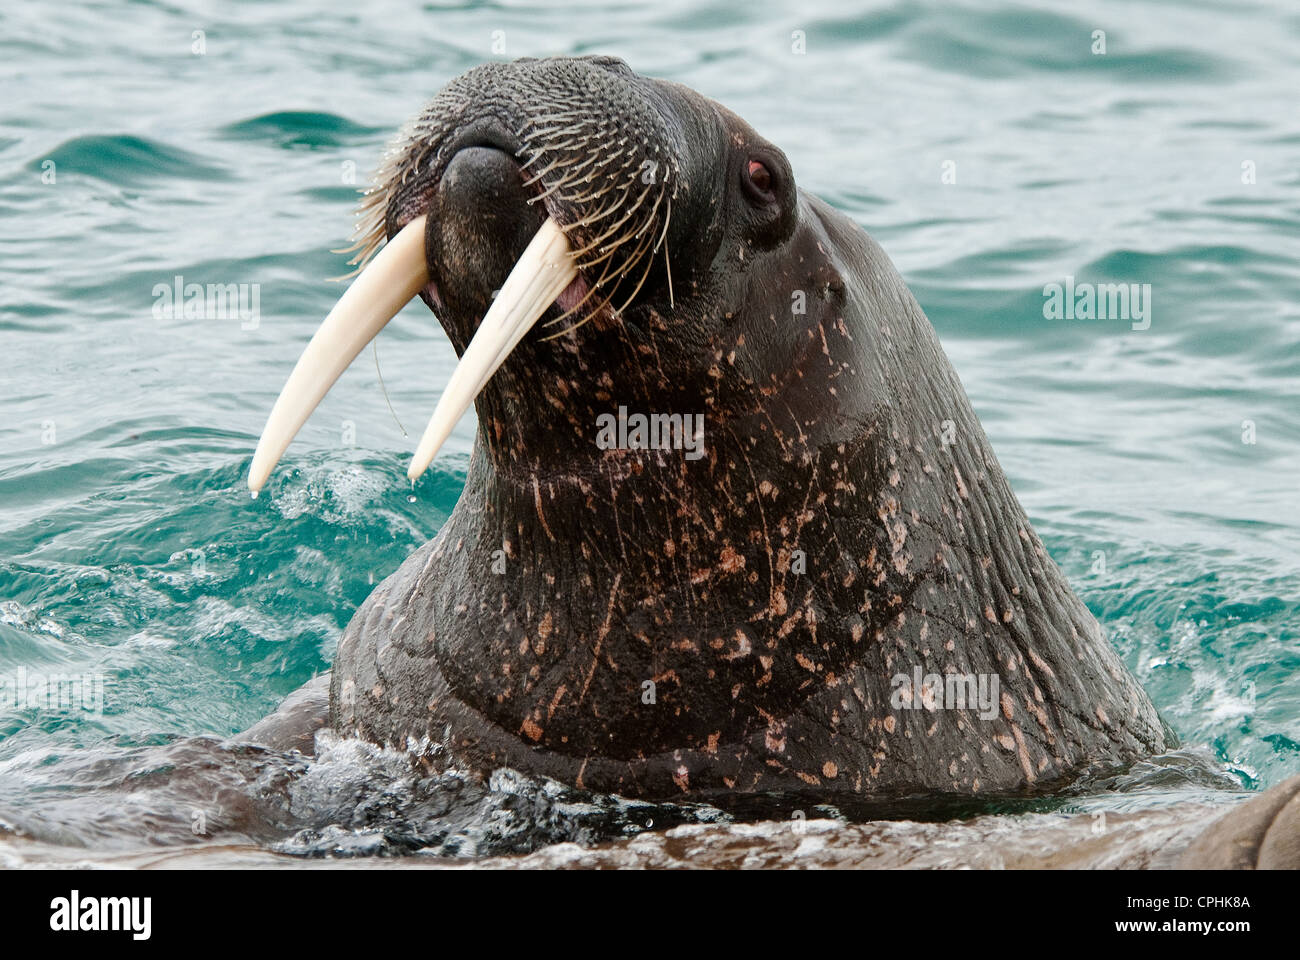 North Atlantic Walrus Odobenus rosmarus Nordaustland Svalbard Norway Stock Photo